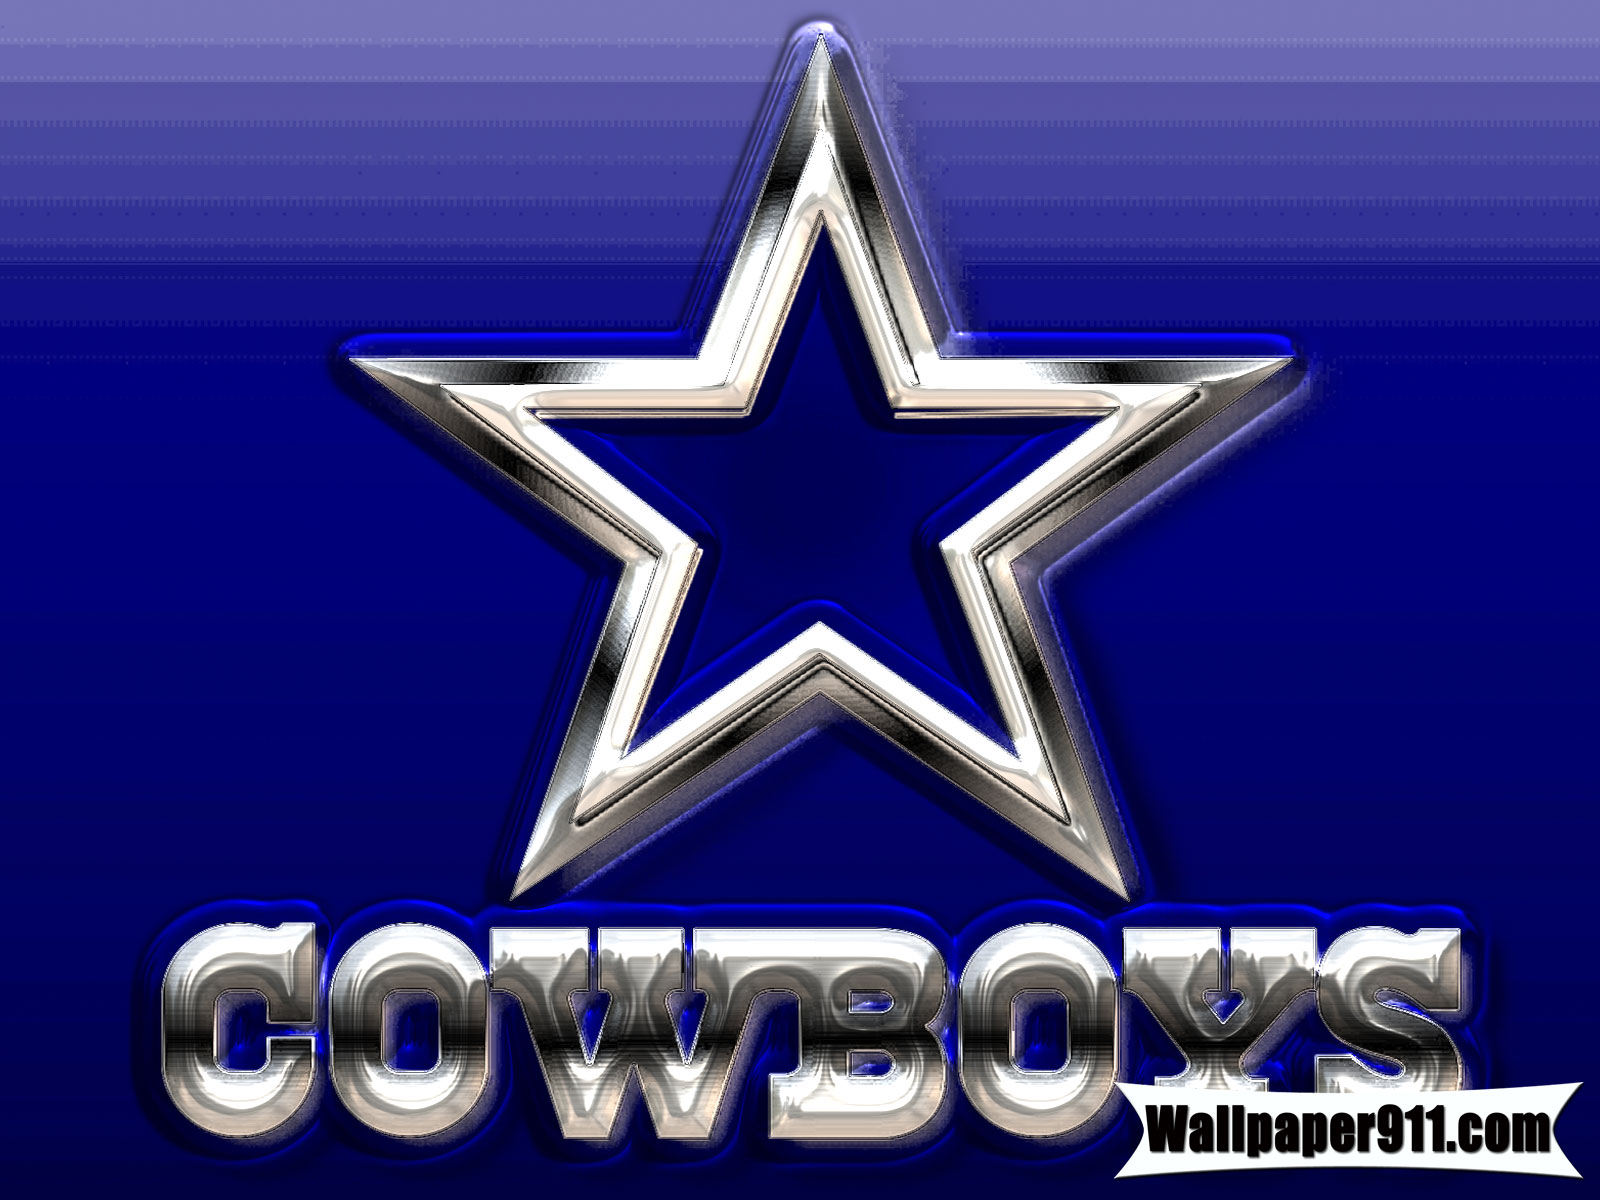 Dallas Cowboys season schedule wallpapers  Dallas Sports Fanatic